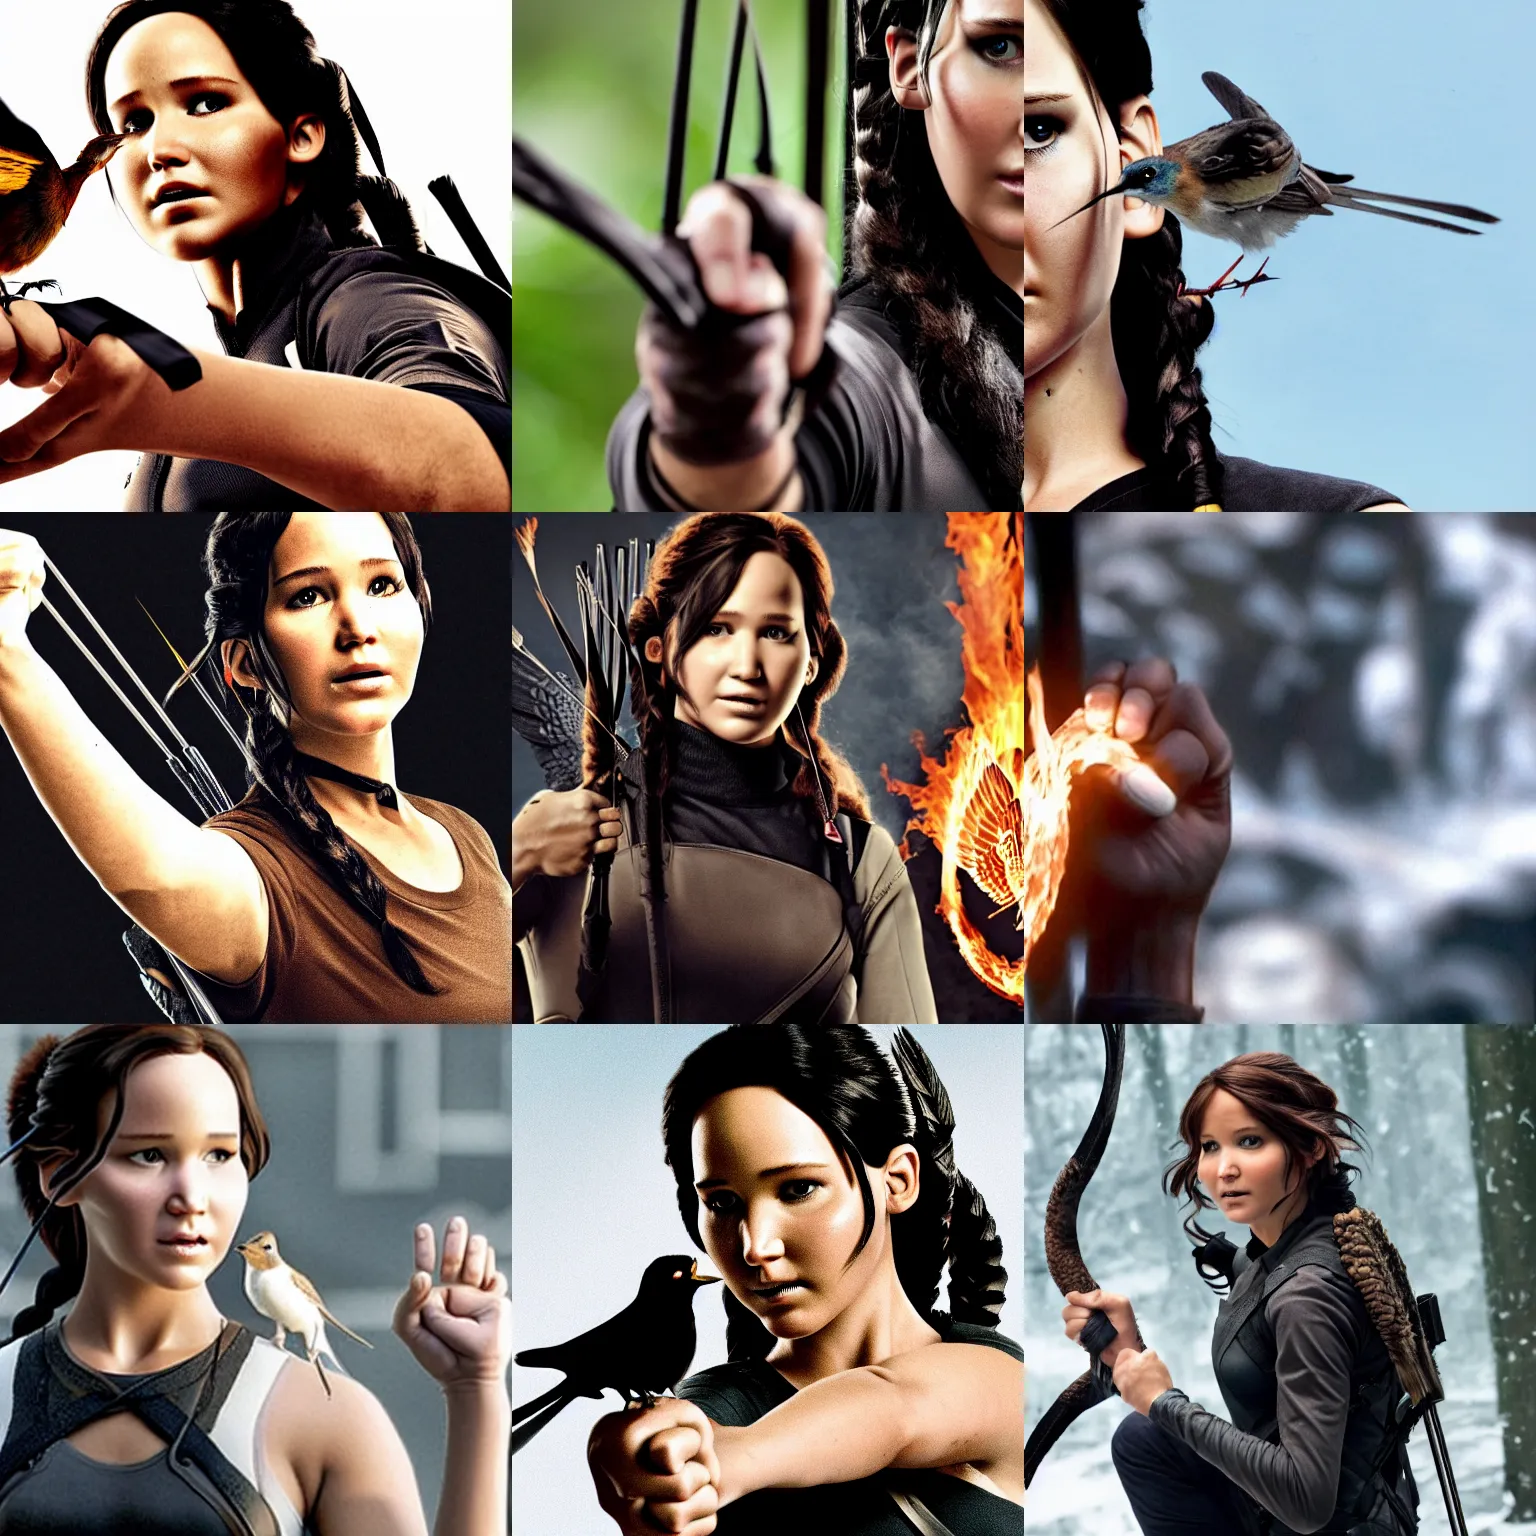 Prompt: Katniss Everdeen holding a bird in her fist, closeup of fist